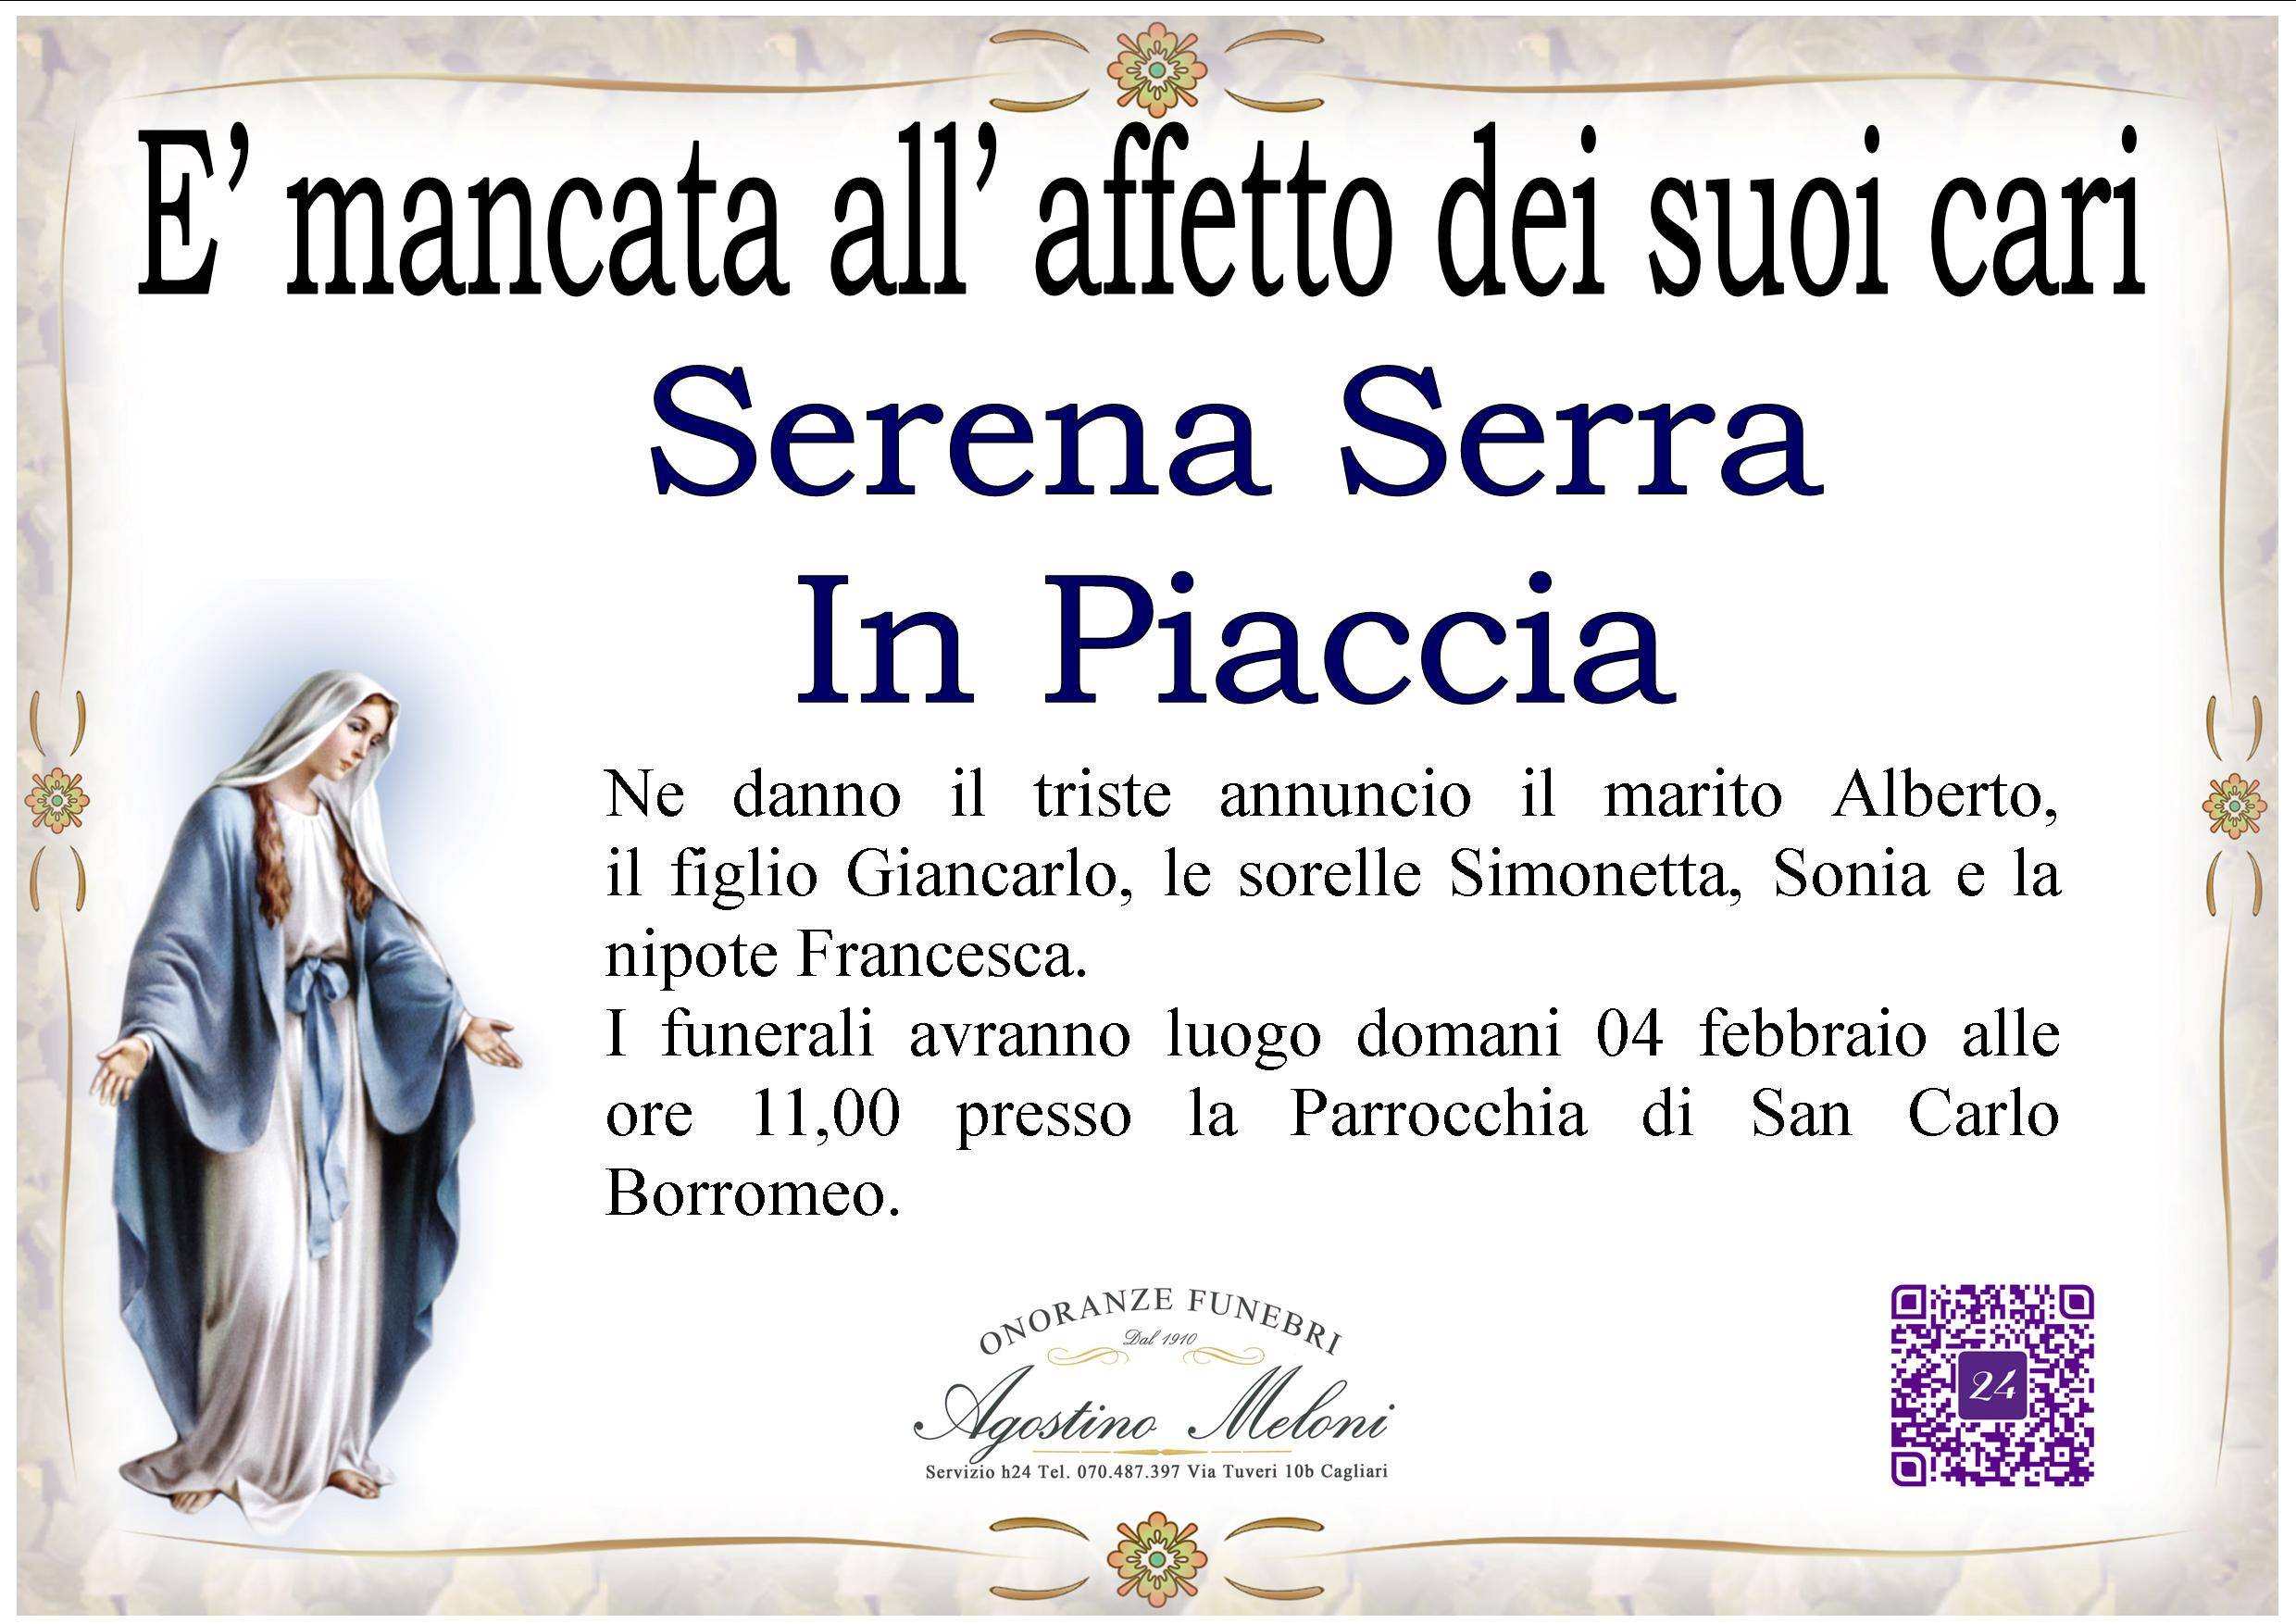 Serena Serra